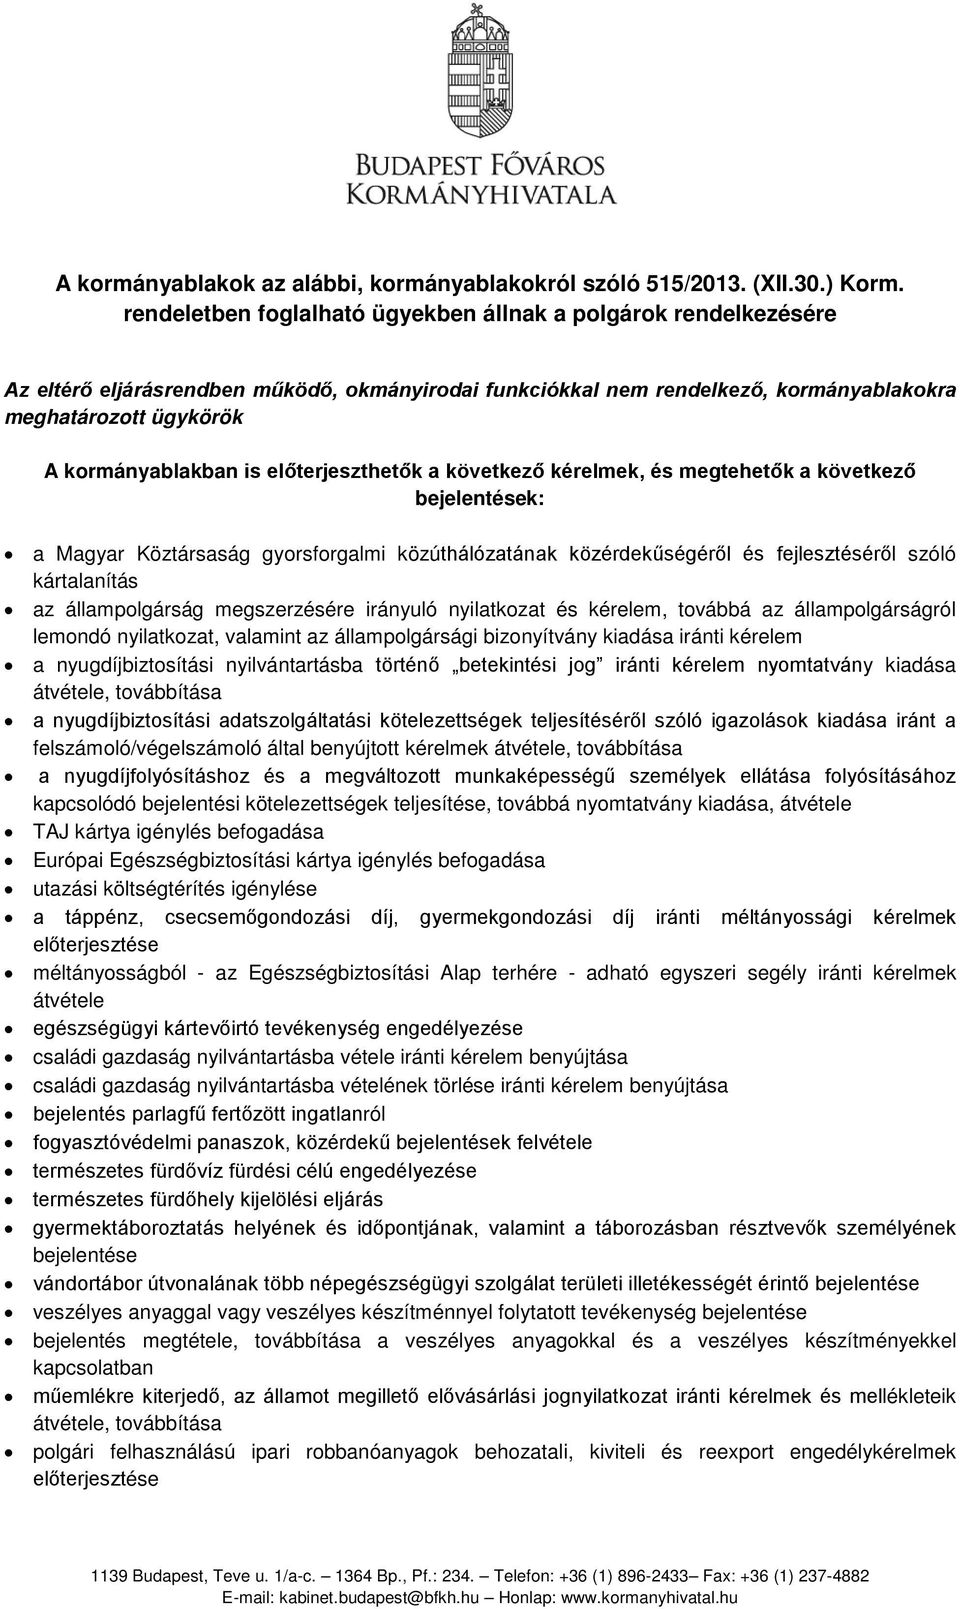 A kormányablakok az alábbi, kormányablakokról szóló 515/2013. (XII.30.)  Korm. rendeletben foglalható ügyekben állnak a polgárok rendelkezésére -  PDF Ingyenes letöltés